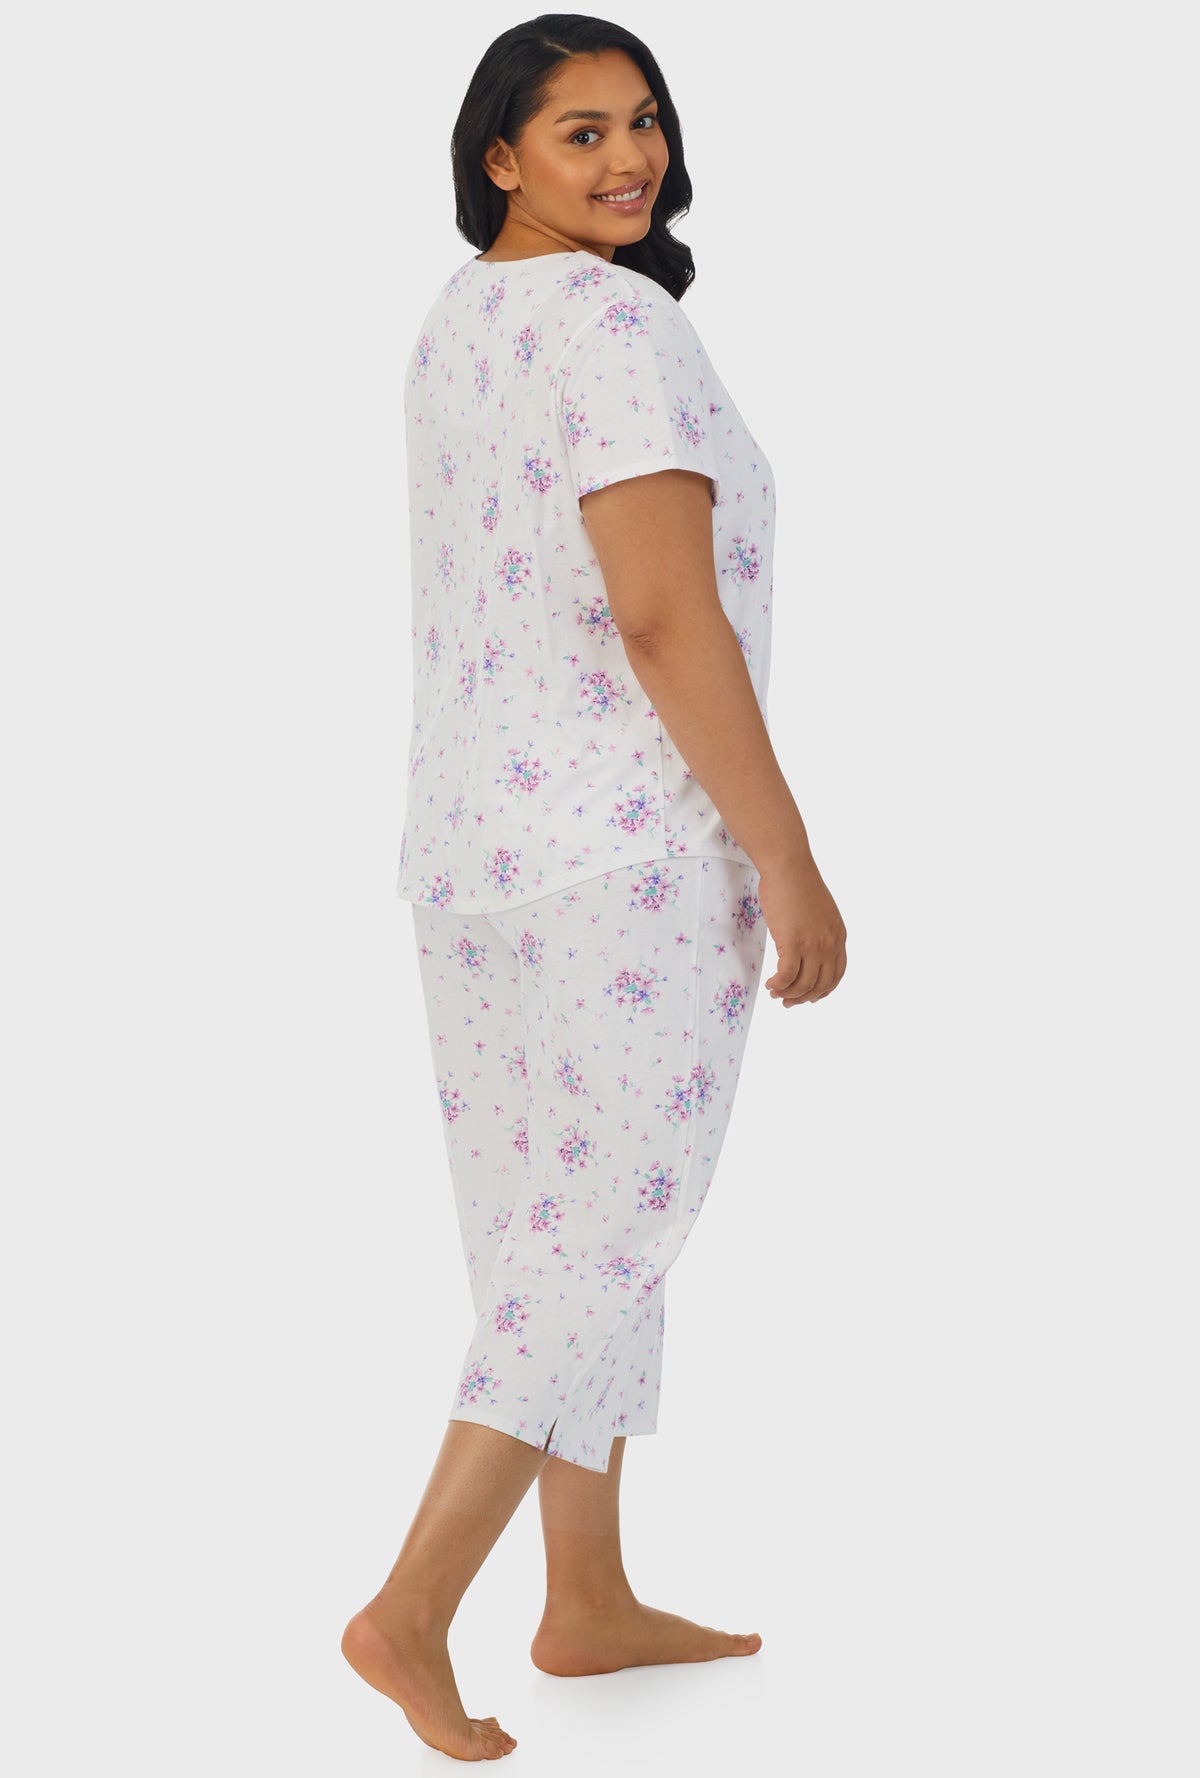 A lady wearing purple short sleeve capri pant plus size pj set with mulberry purple floral bouquet print.